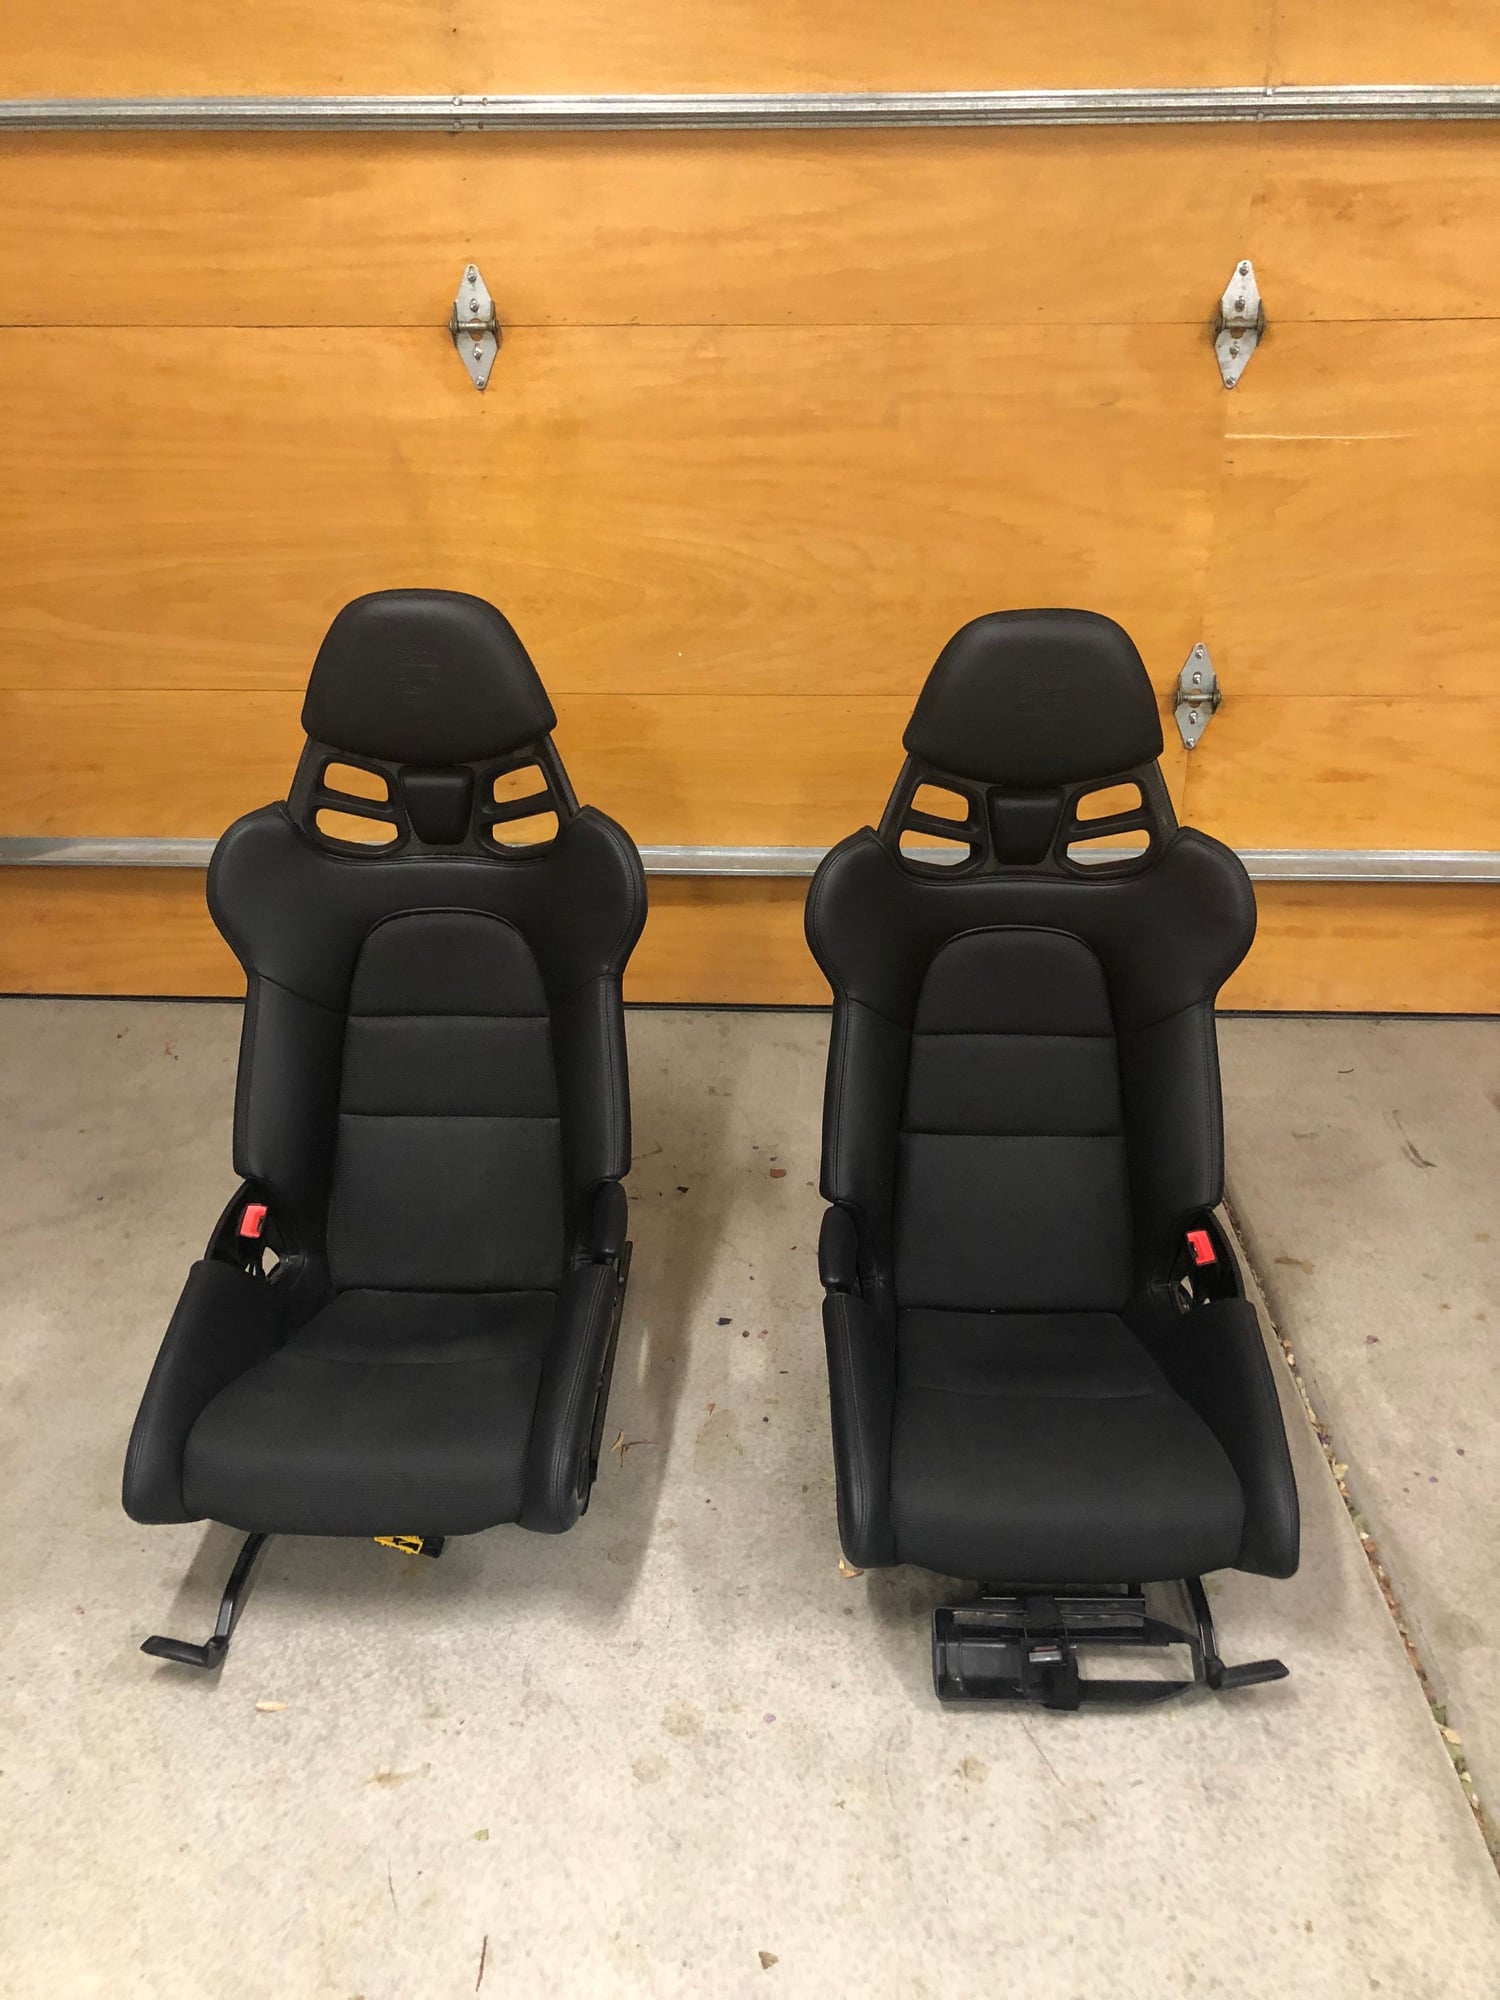 2018 Porsche GT3 - 981 991 Porsche Lightweight Bucket Seats - Interior/Upholstery - $13,500 - Irvine, CA 92620, United States